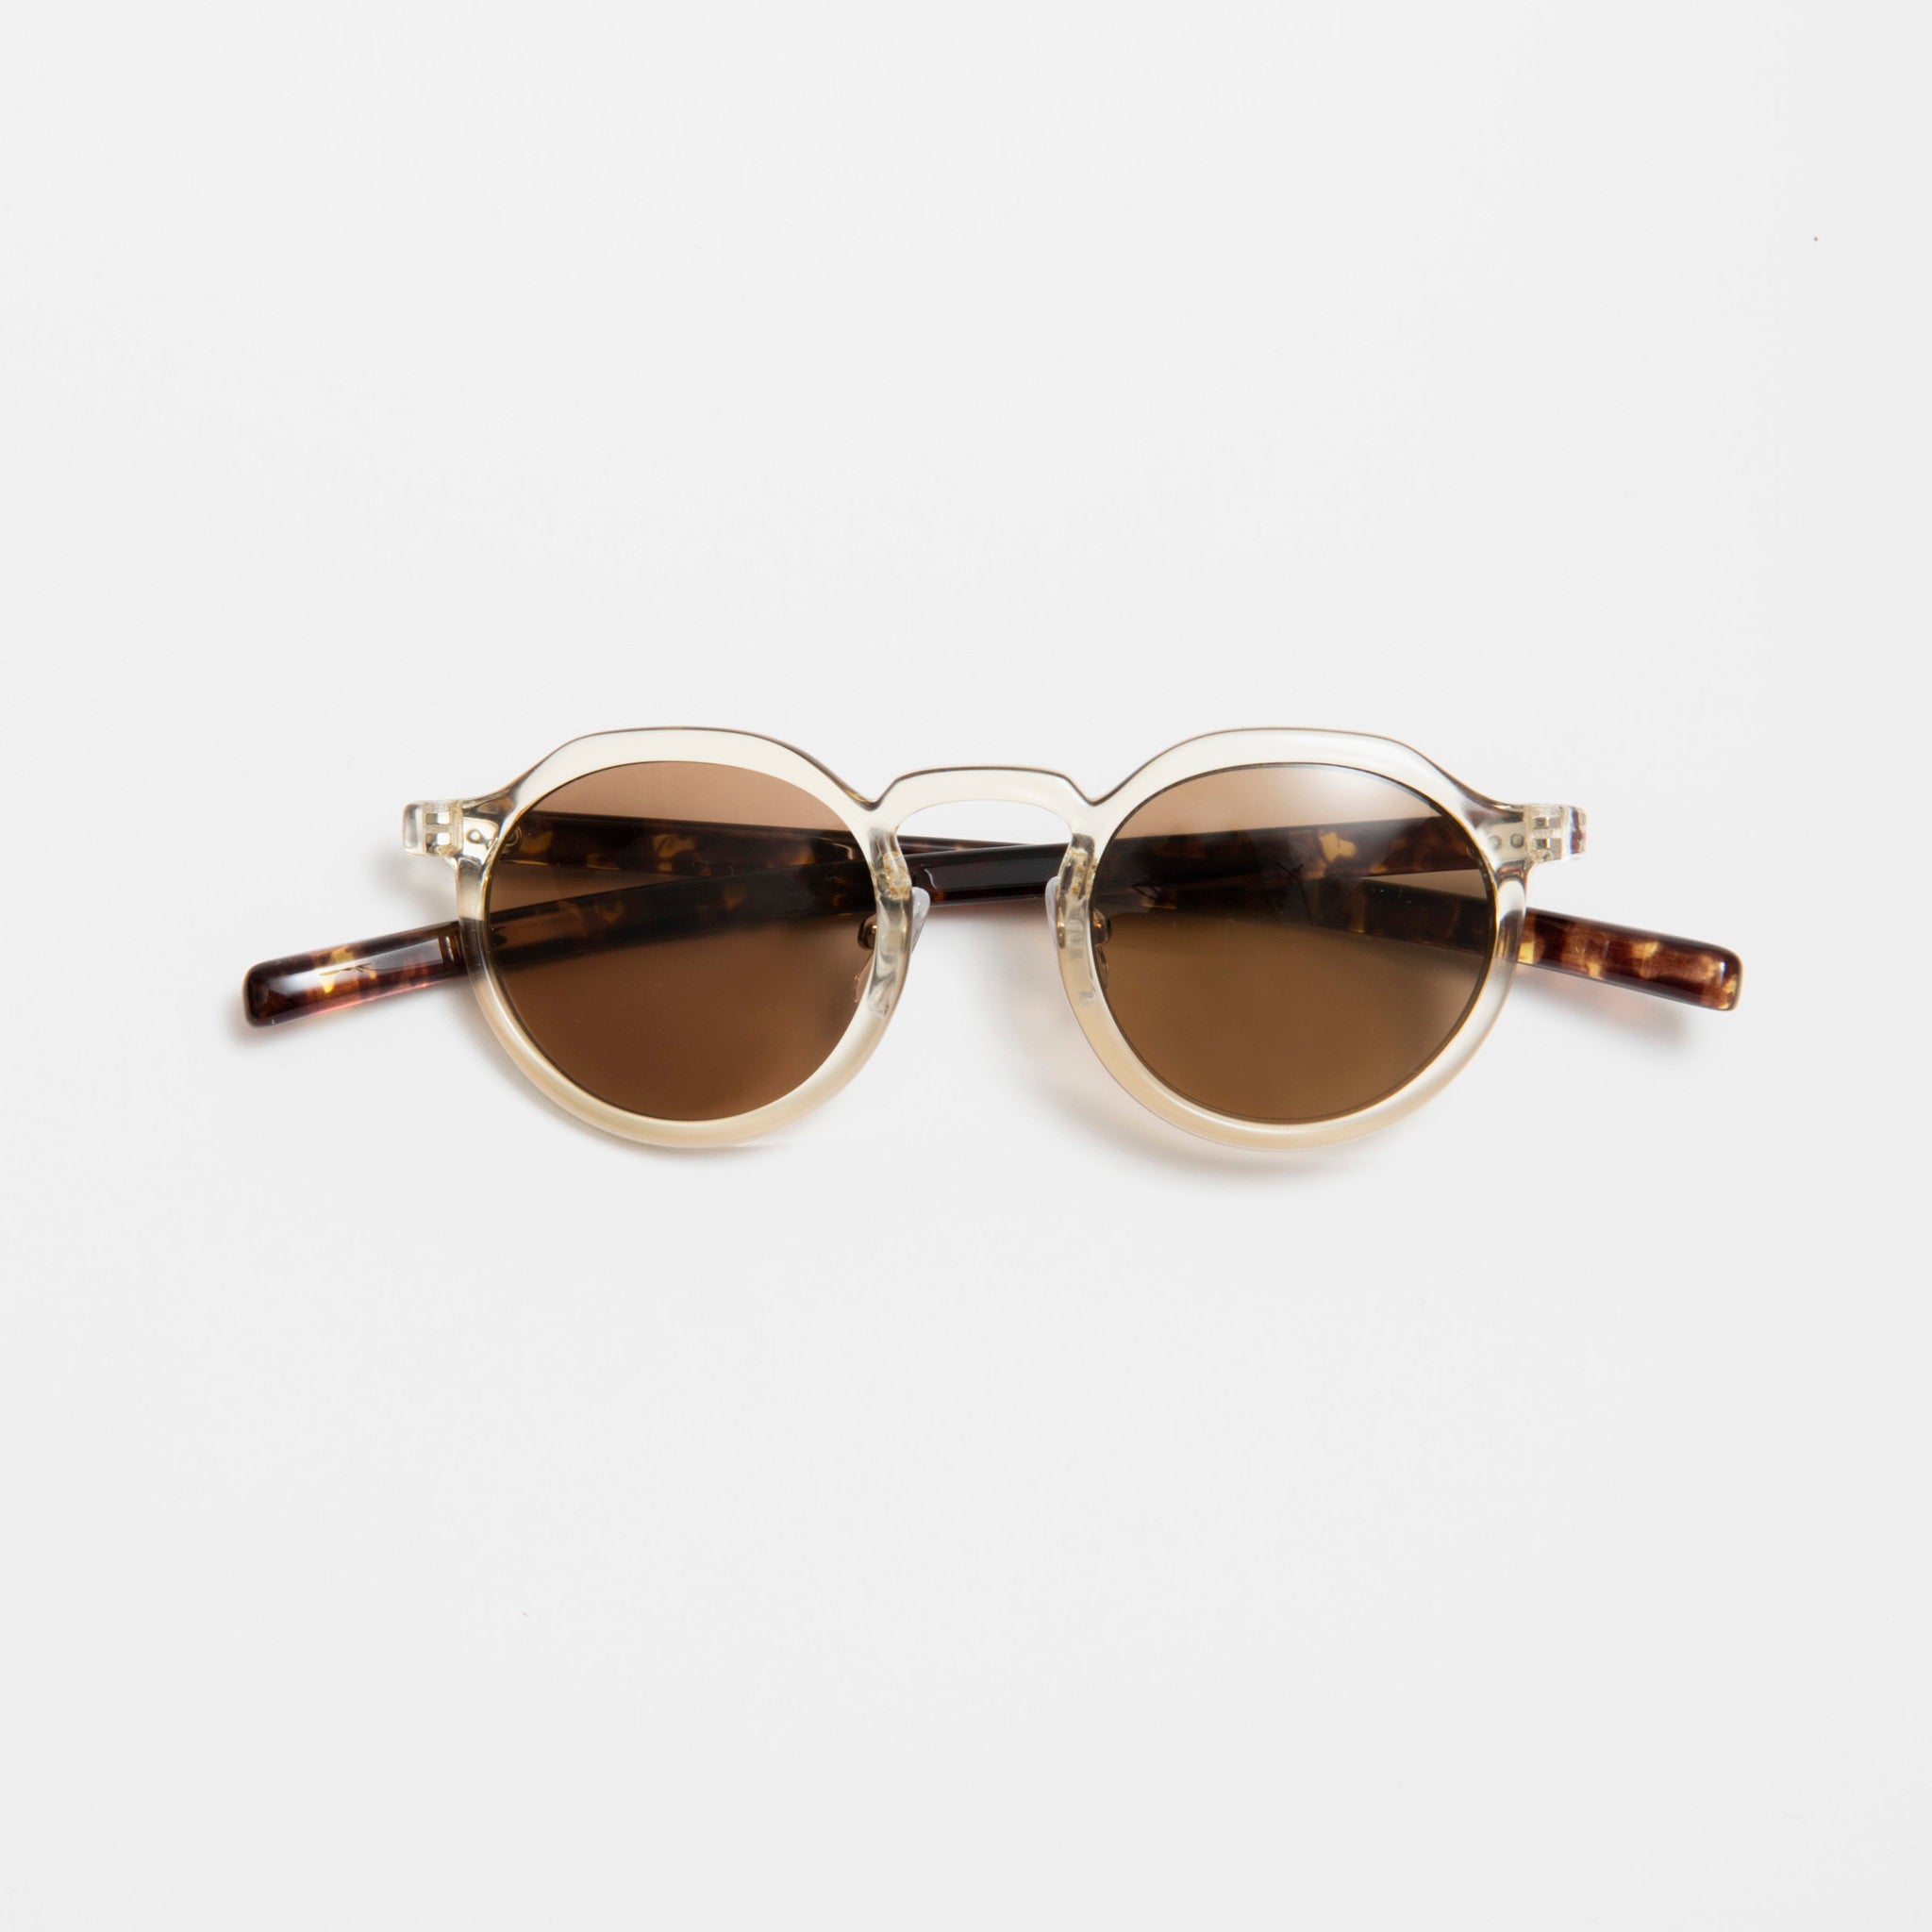 【Ciqi】DAMON サングラス Clear Brown Lenses sunglasses(デイモン クリア ブラウンレンズ)